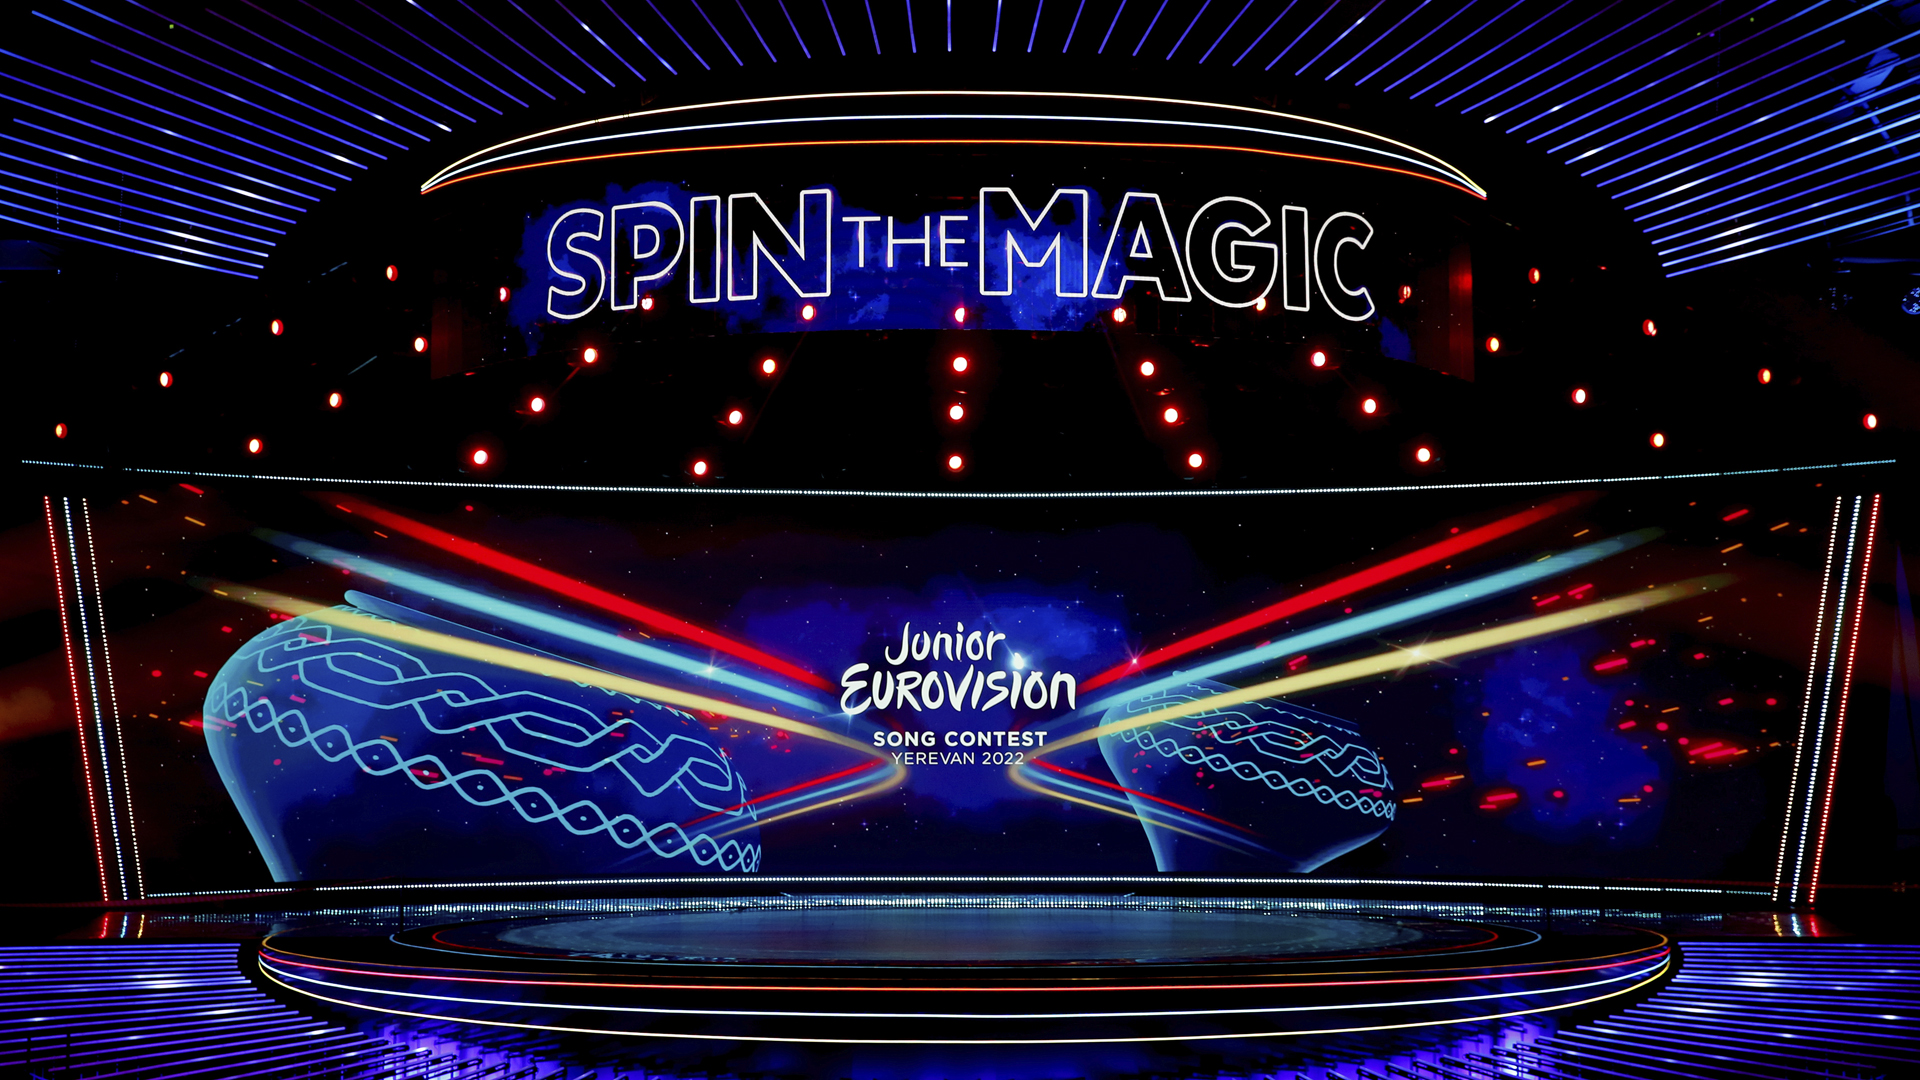 ¡Conoce el orden de actuación de Eurovisión Junior 2022!